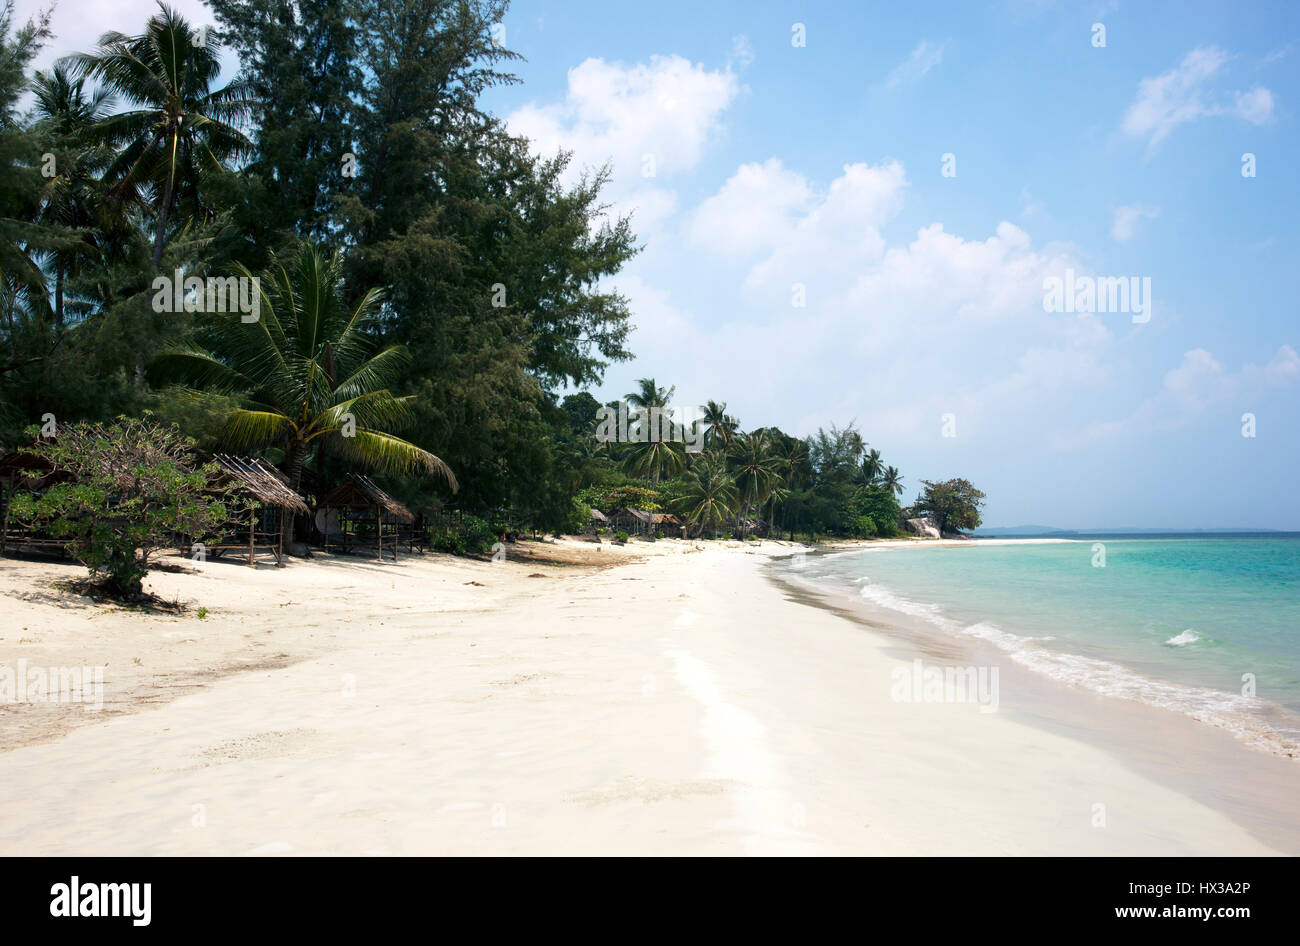 Tropische streckte, weissen Sandstrand und Palmen mit blauen Ozean Meer Wasser am Nachmittag am Tanjung Pinang auf der Bintan Insel, Ind Stockfoto